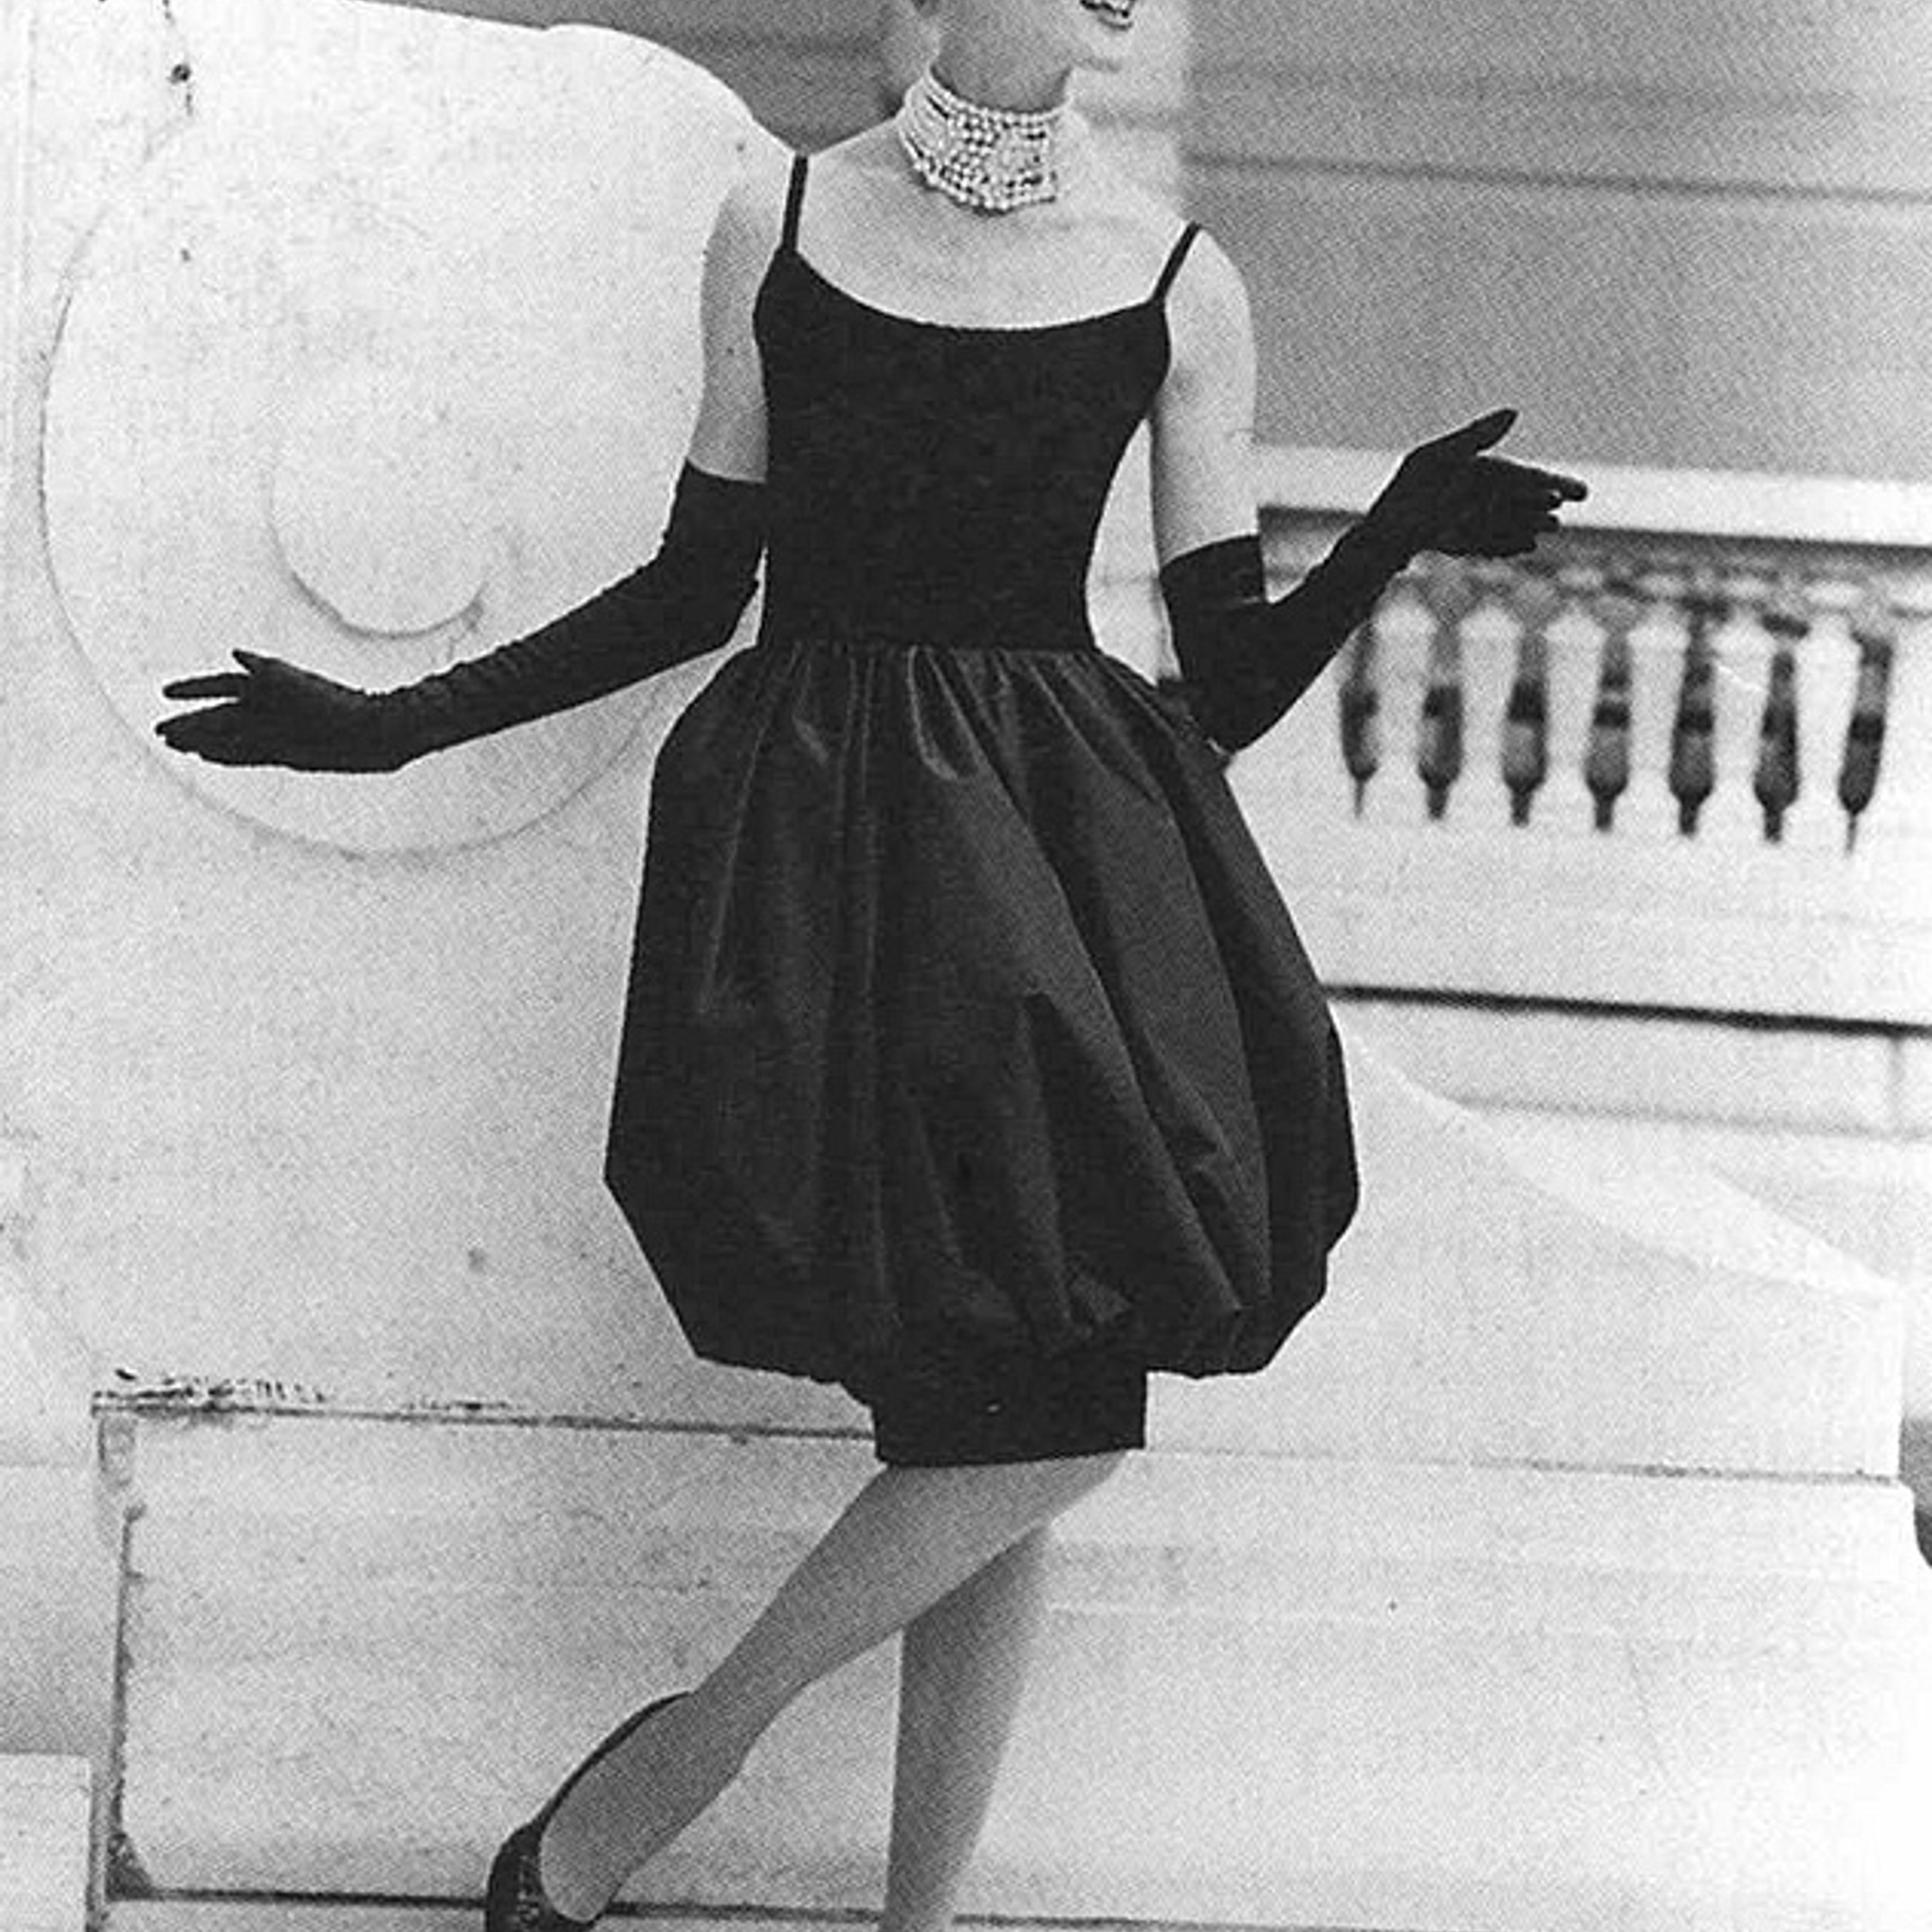 Фото 8. Ив Сен Лоран-Диор, модель из коллекции 1959 года.